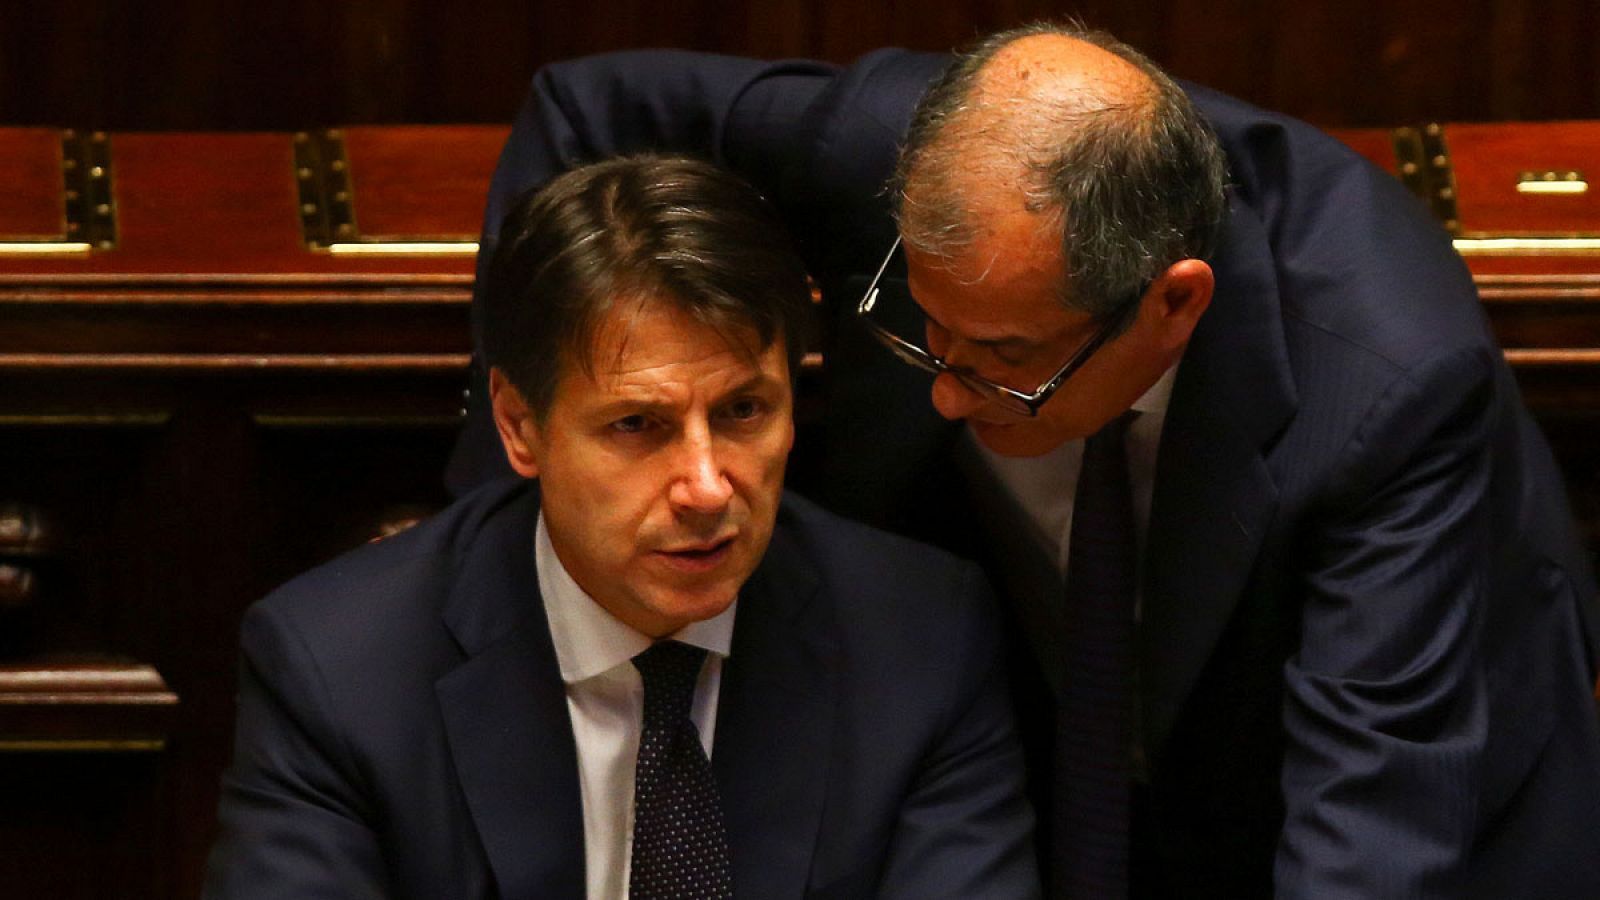 El primer ministro italiano, Giuseppe Conte, conversa con su ministro de Economía, Giovanni Tria